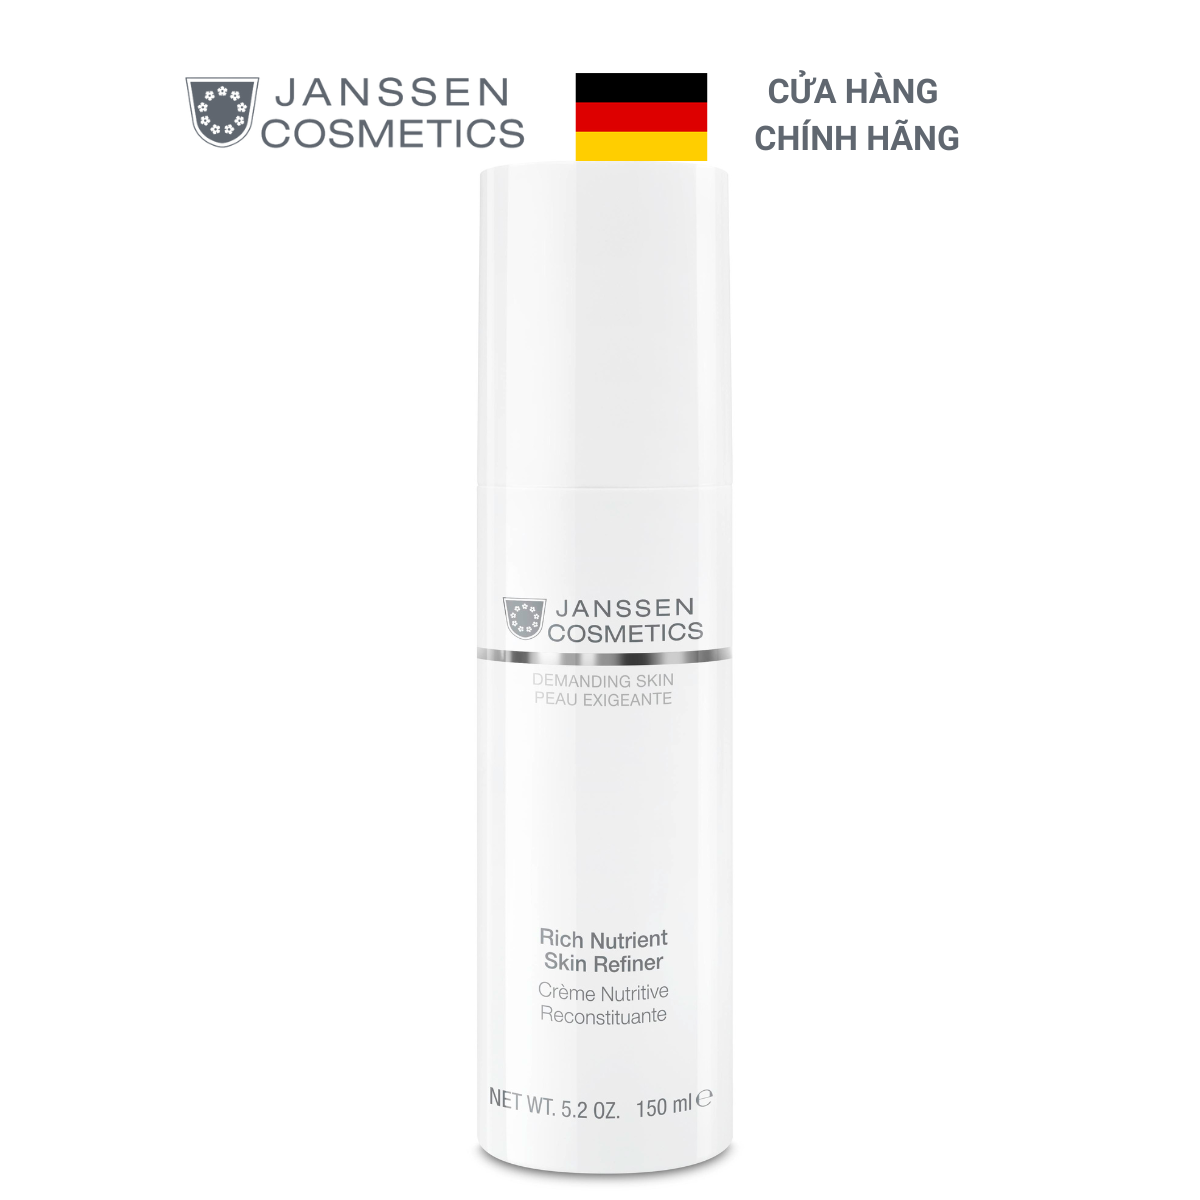  Kem mịn da, nâng cơ ban ngày cho da lão hoá sớm - Janssen Cosmetics Rich Nutrient Skin Refiner 150ml 